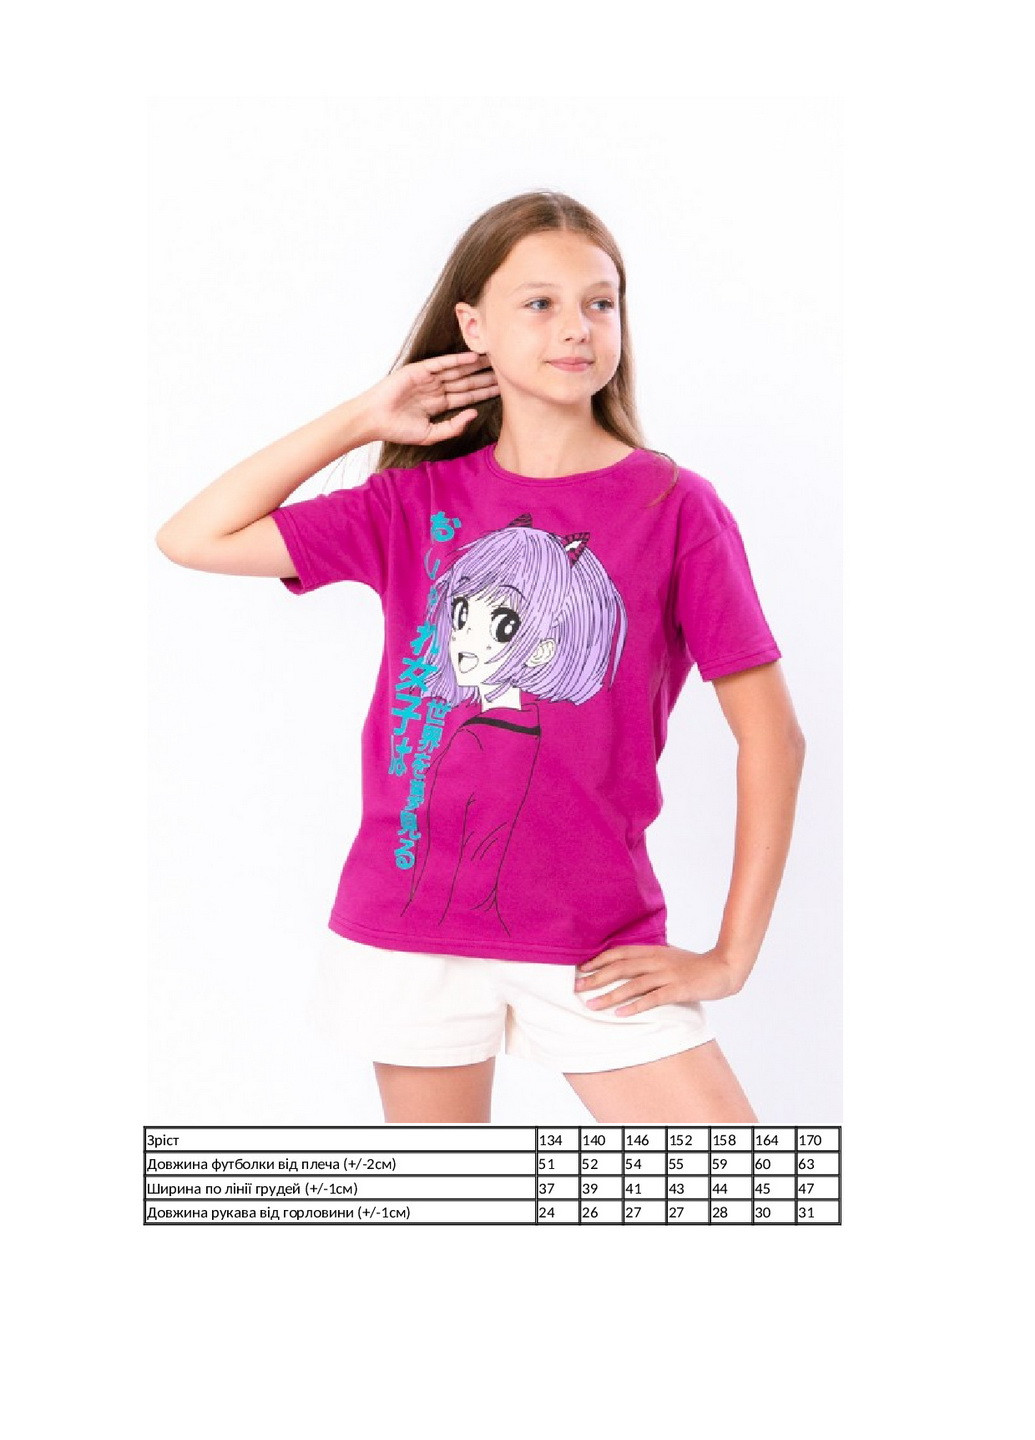 Малиновая летняя футболка для девочки (подростковая) KINDER MODE